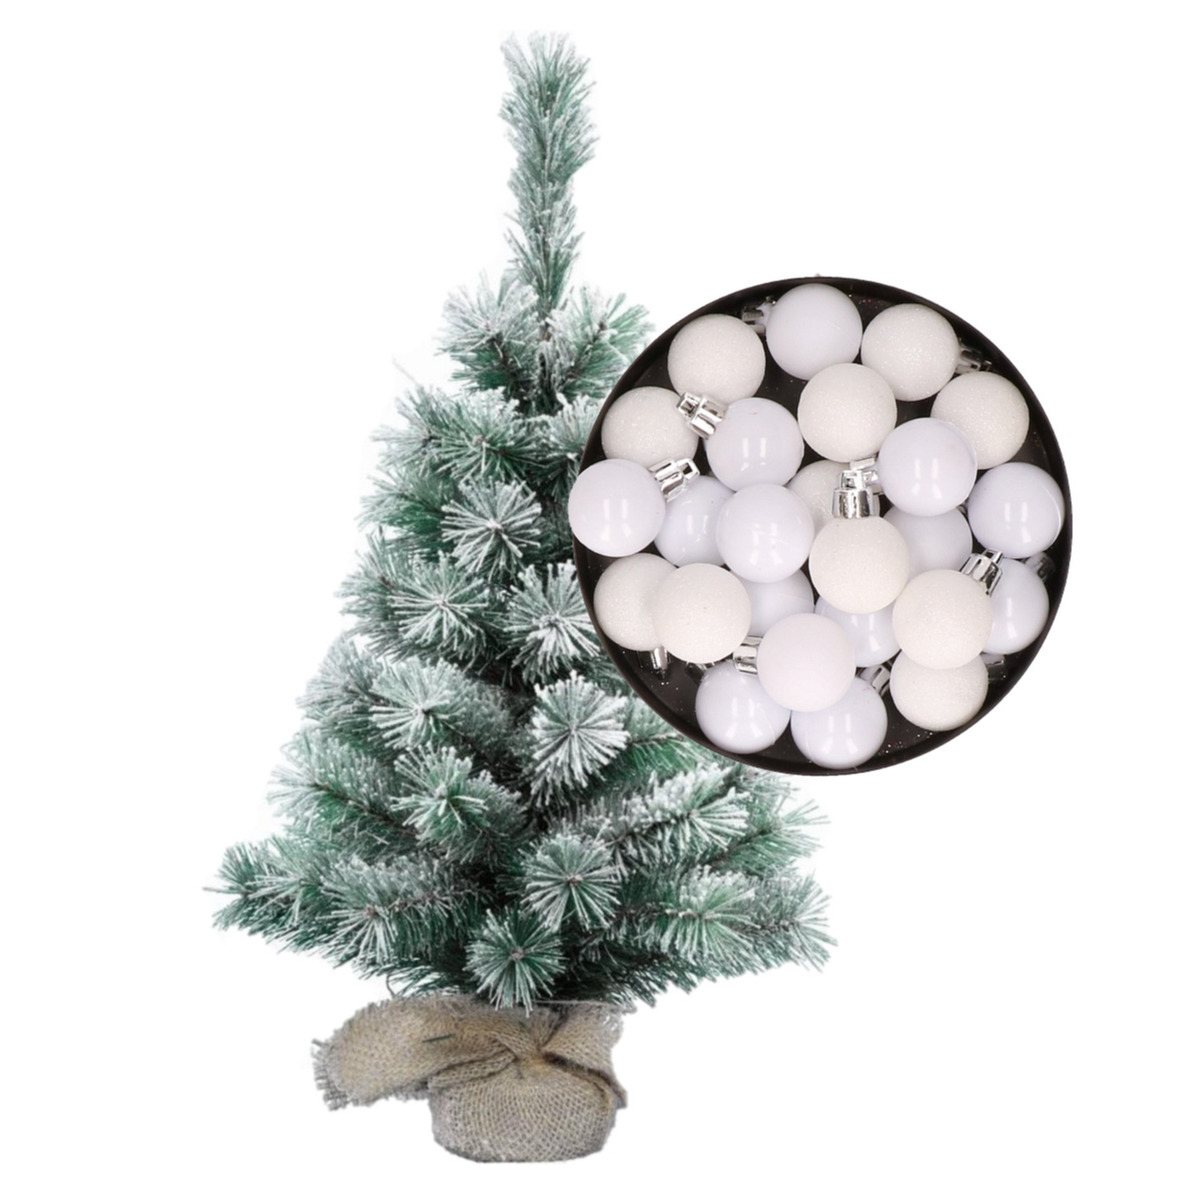 gat Veel Volg ons Besneeuwde mini kerstboom/kunst kerstboom 35 cm met kerstballen wit  bestellen voor € 17.98 bij het Knuffelparadijs